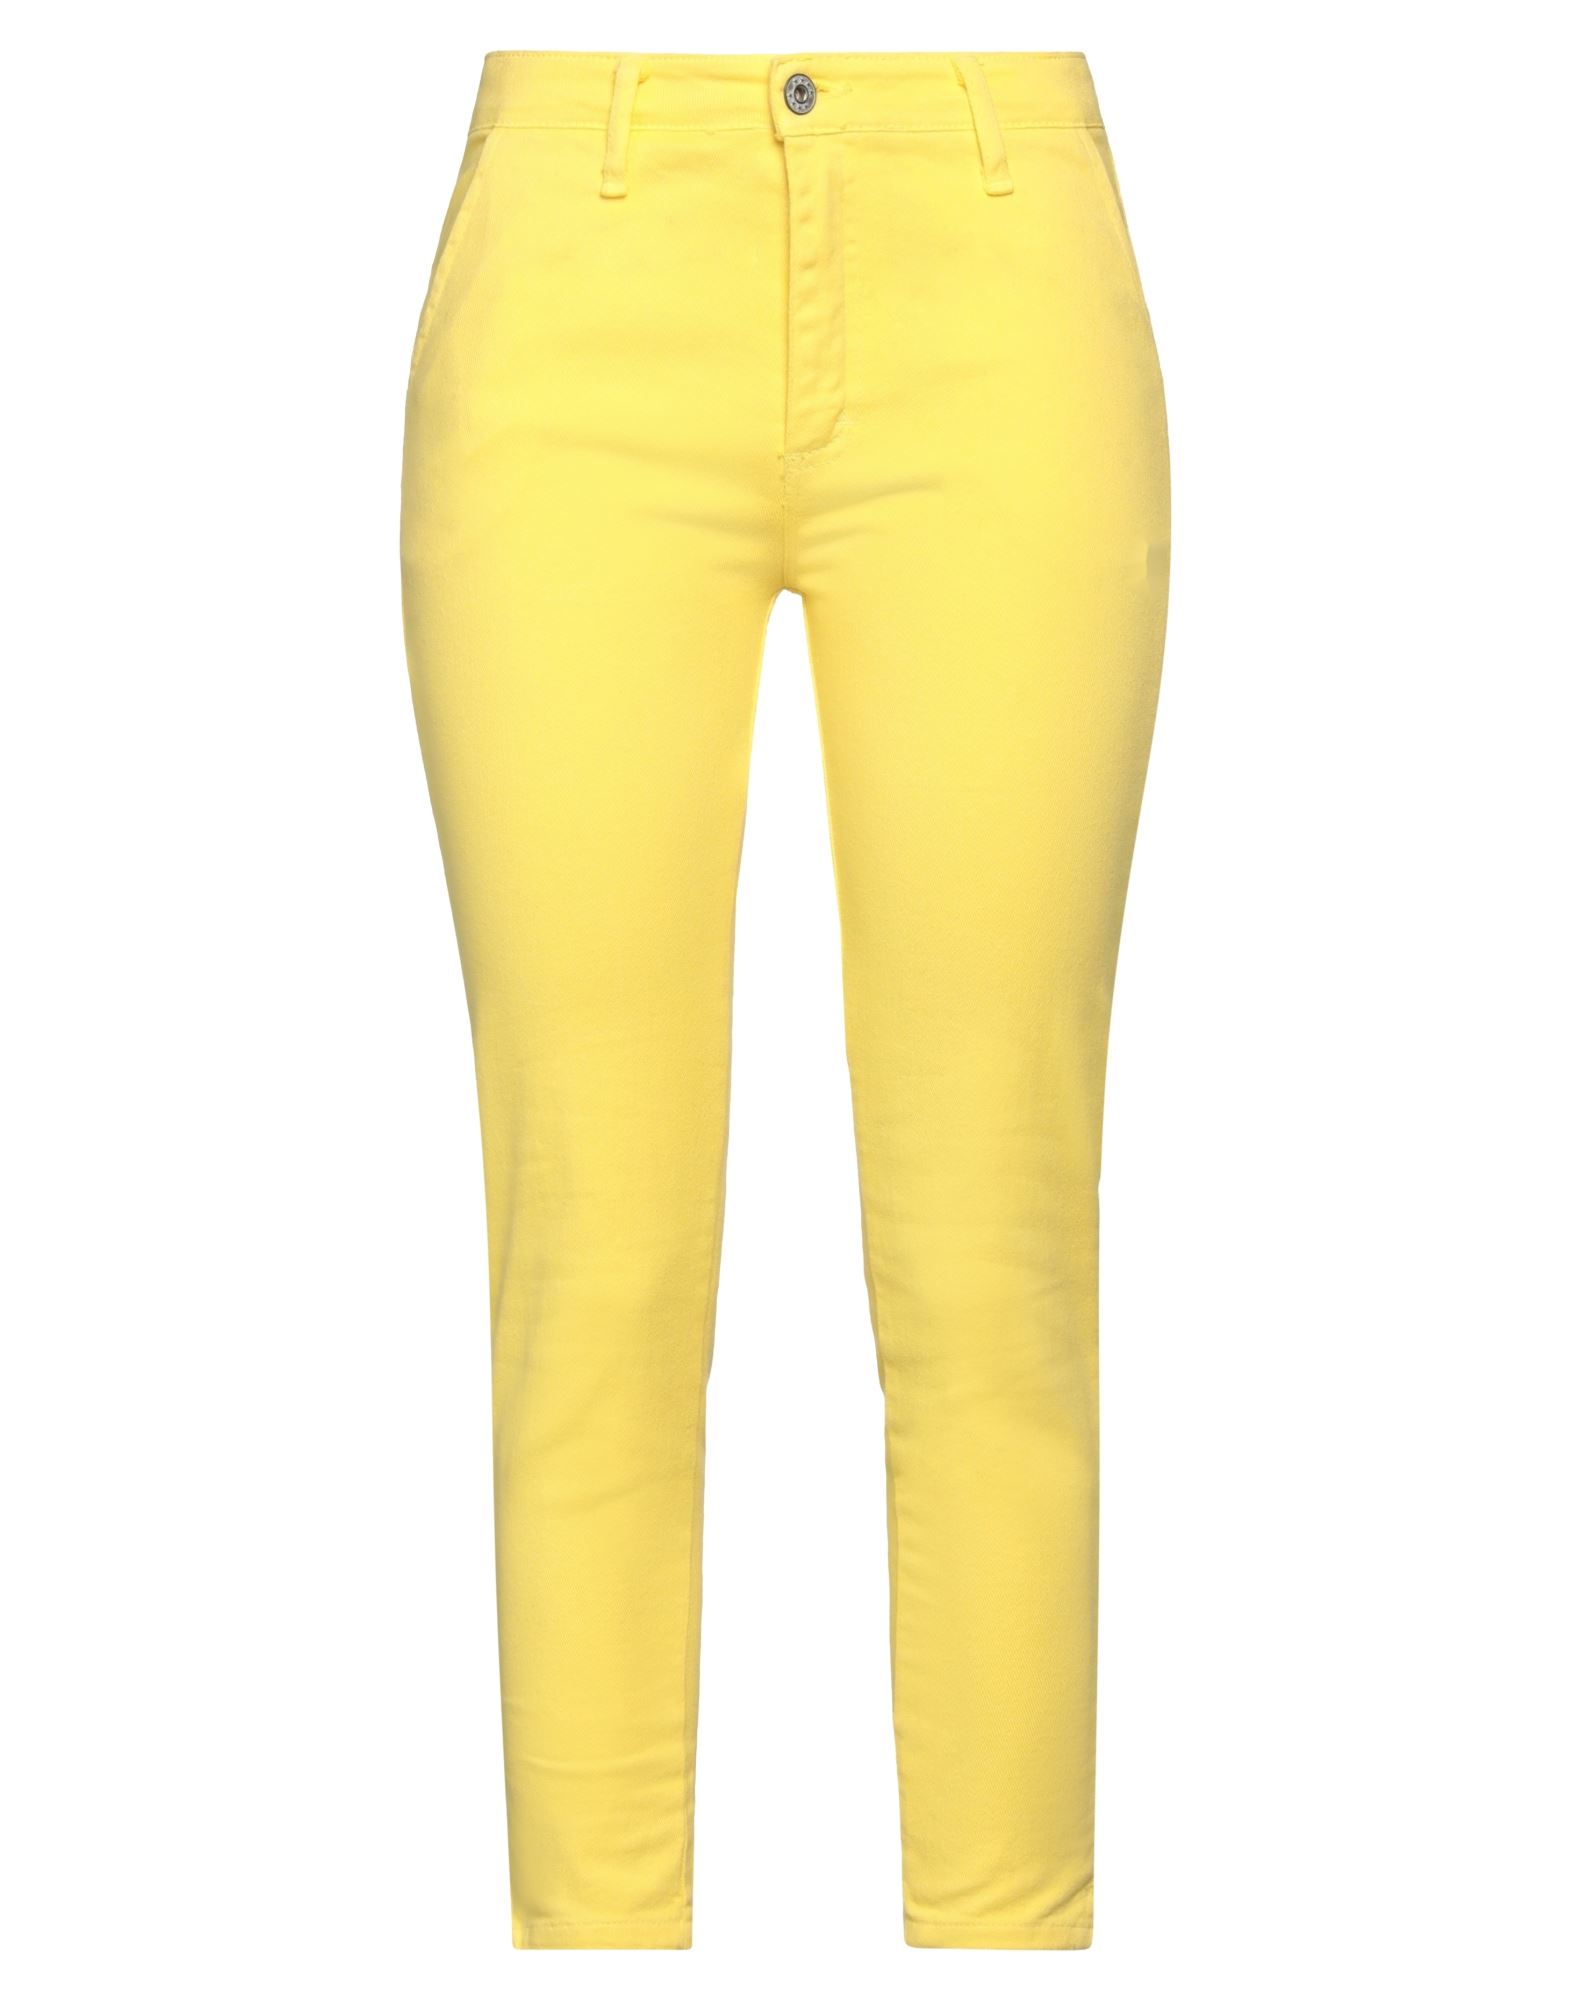 Boutique De La Femme Pants In Yellow